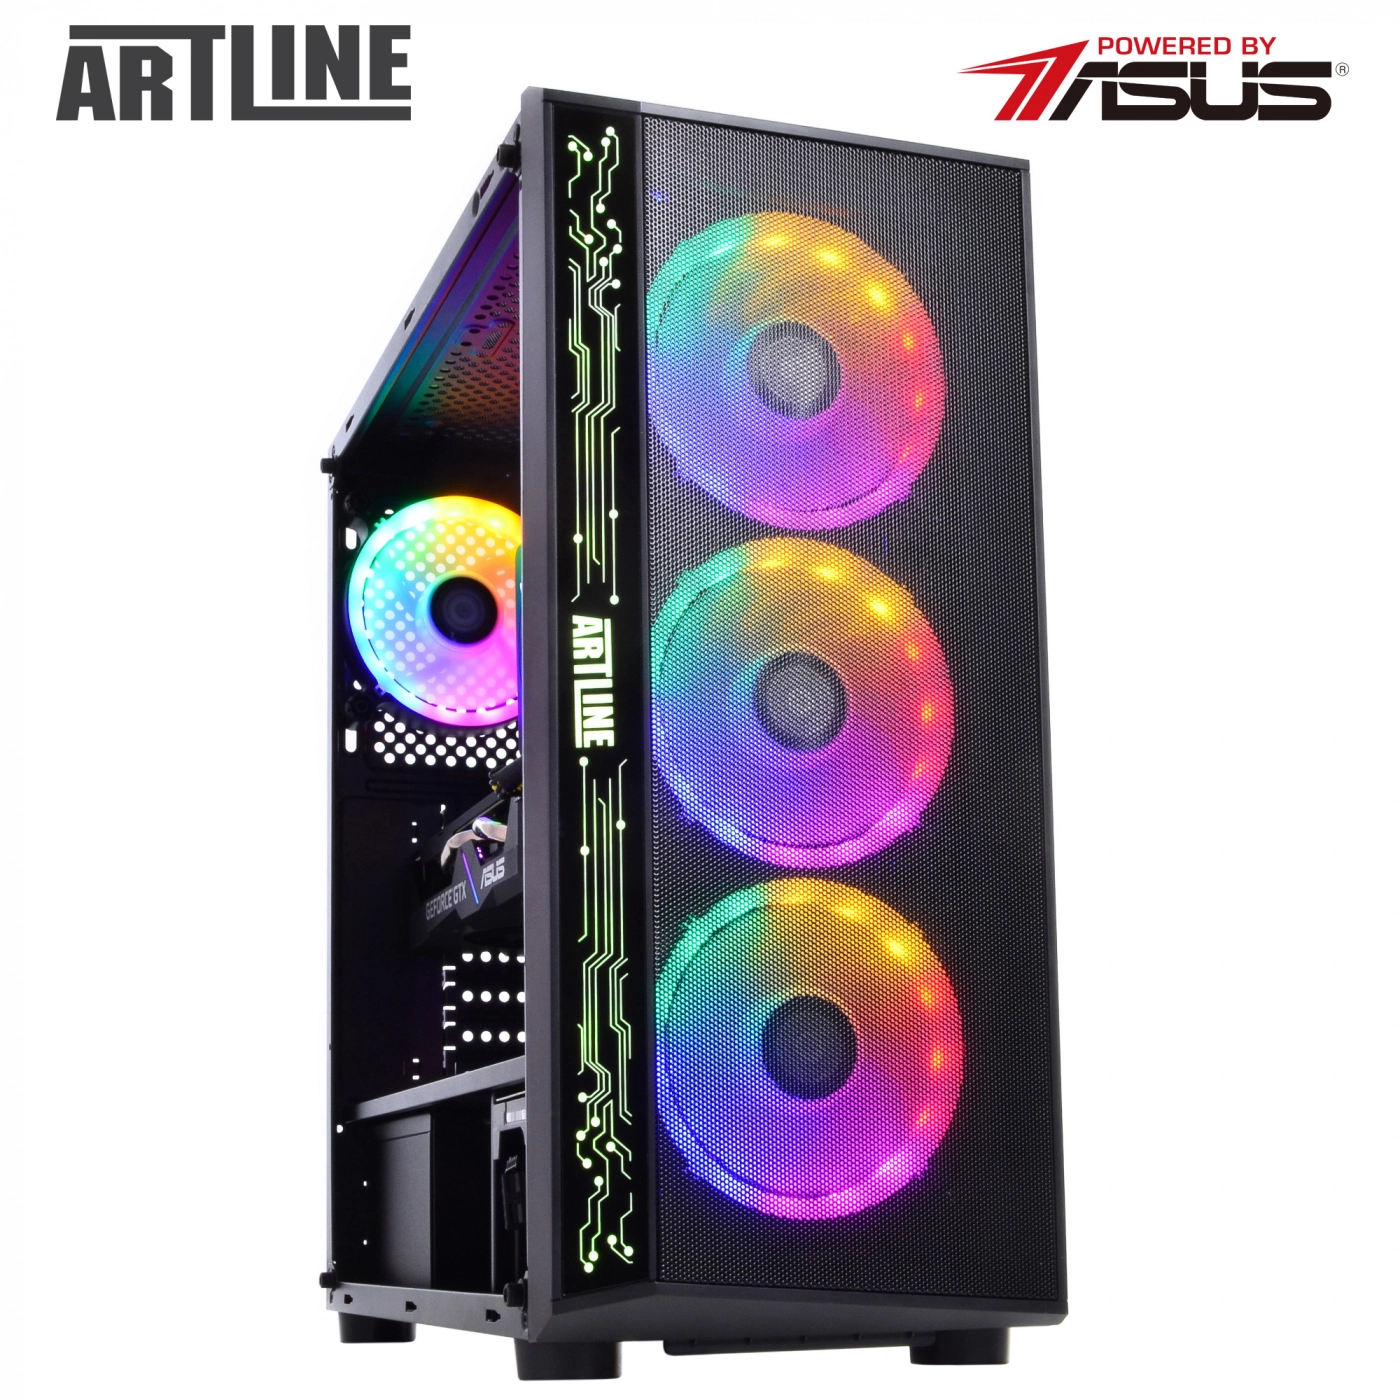 Купить Компьютер ARTLINE Gaming X74v05 - фото 10